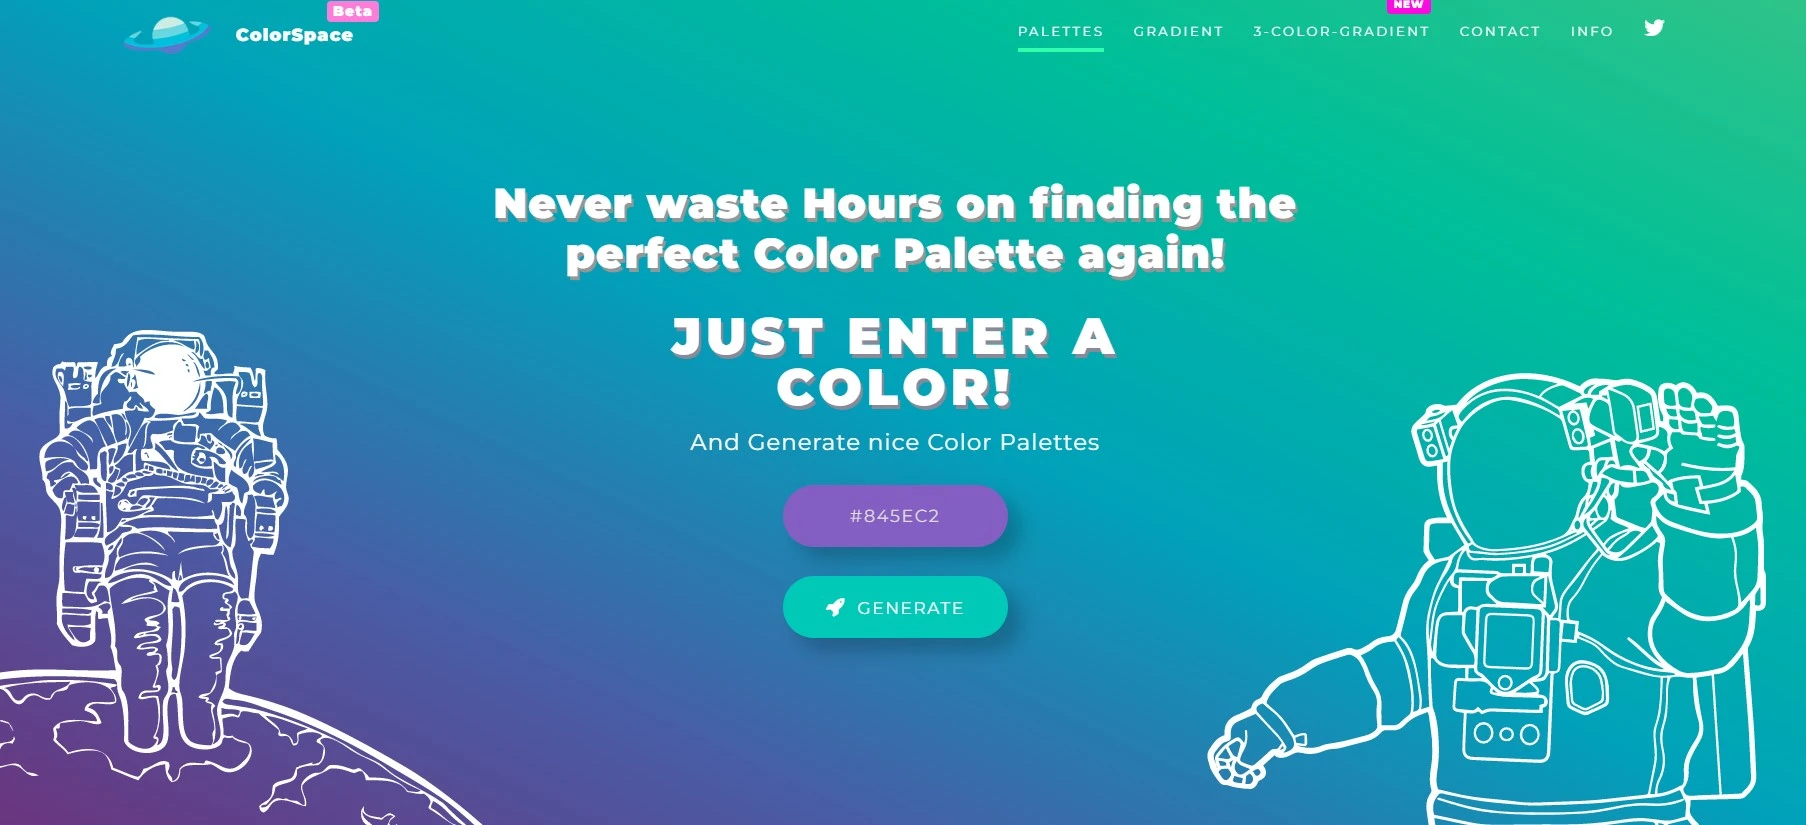 ColorSpace lets you generate color palatte